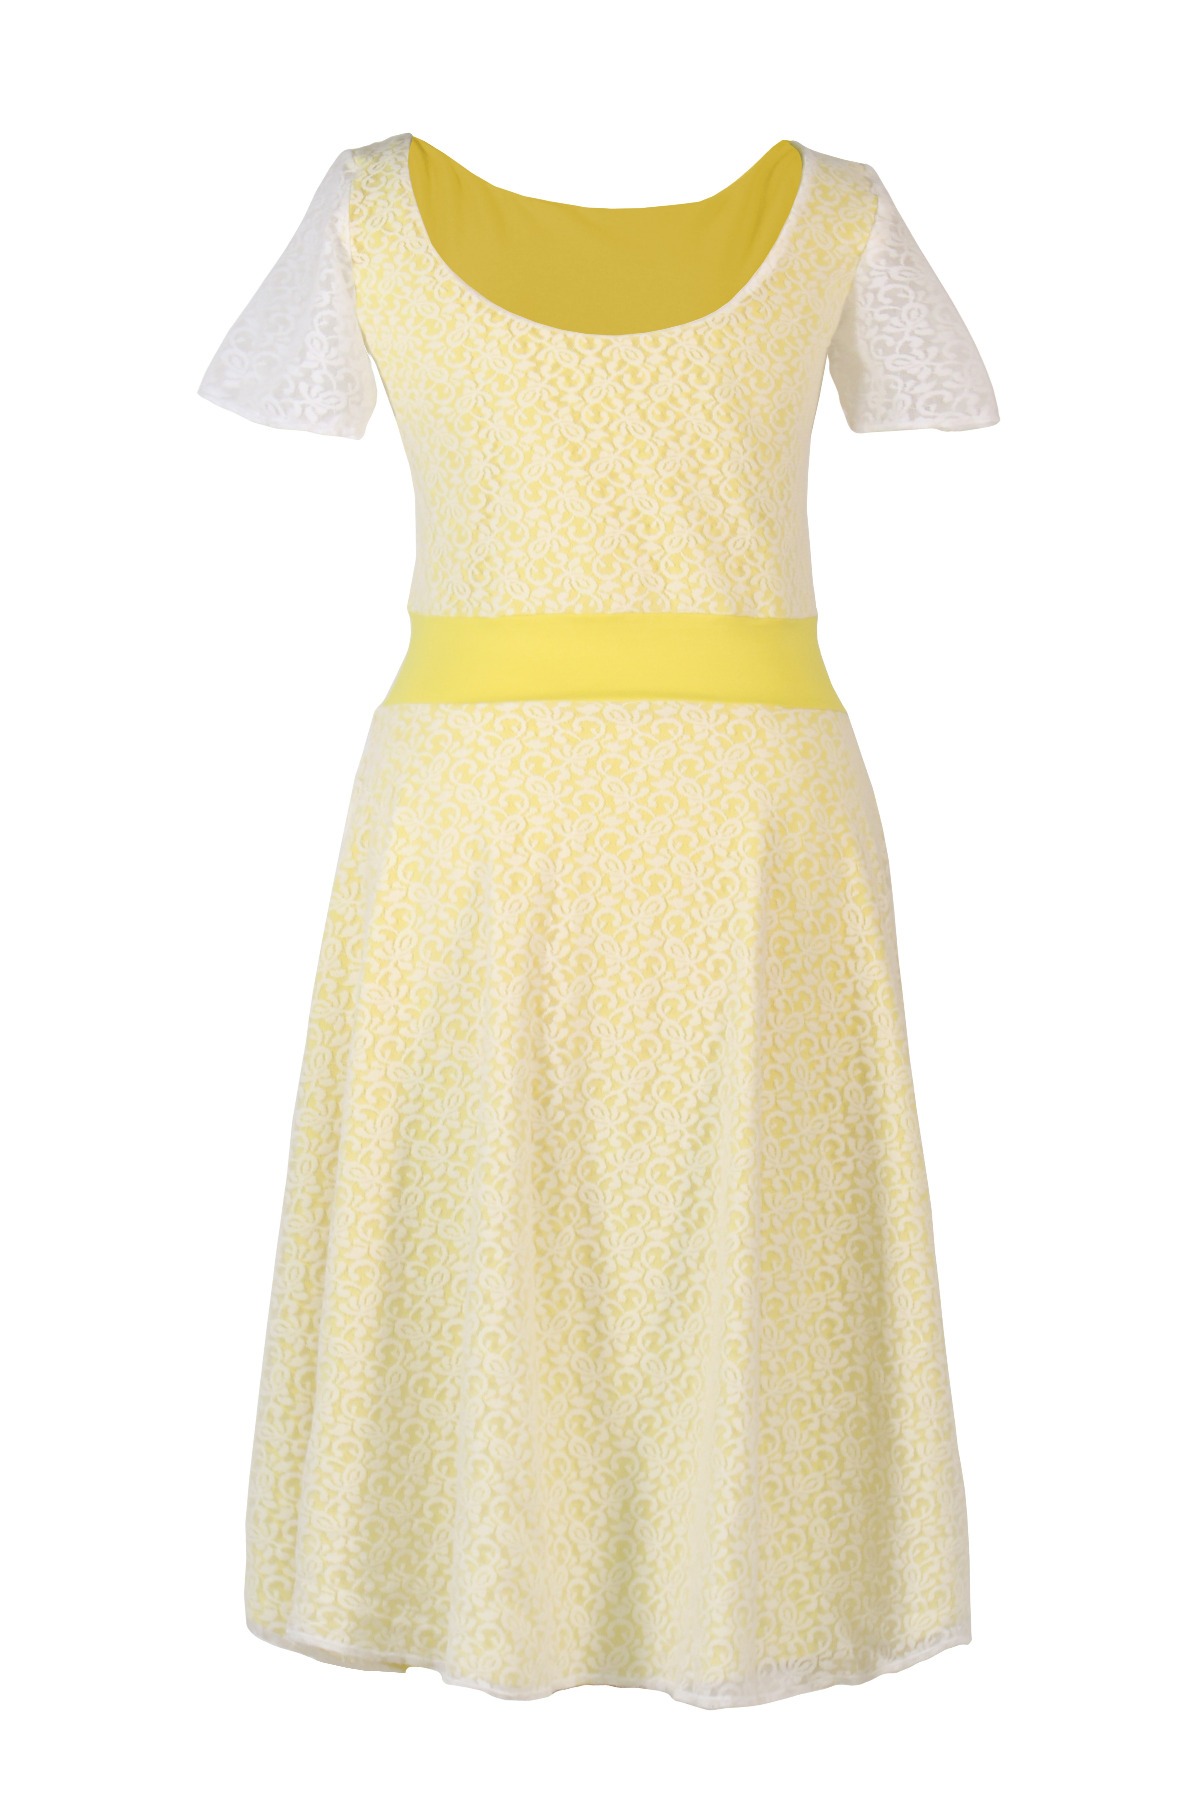 Bio-Kleid Perle zitrone gelb weiß 2